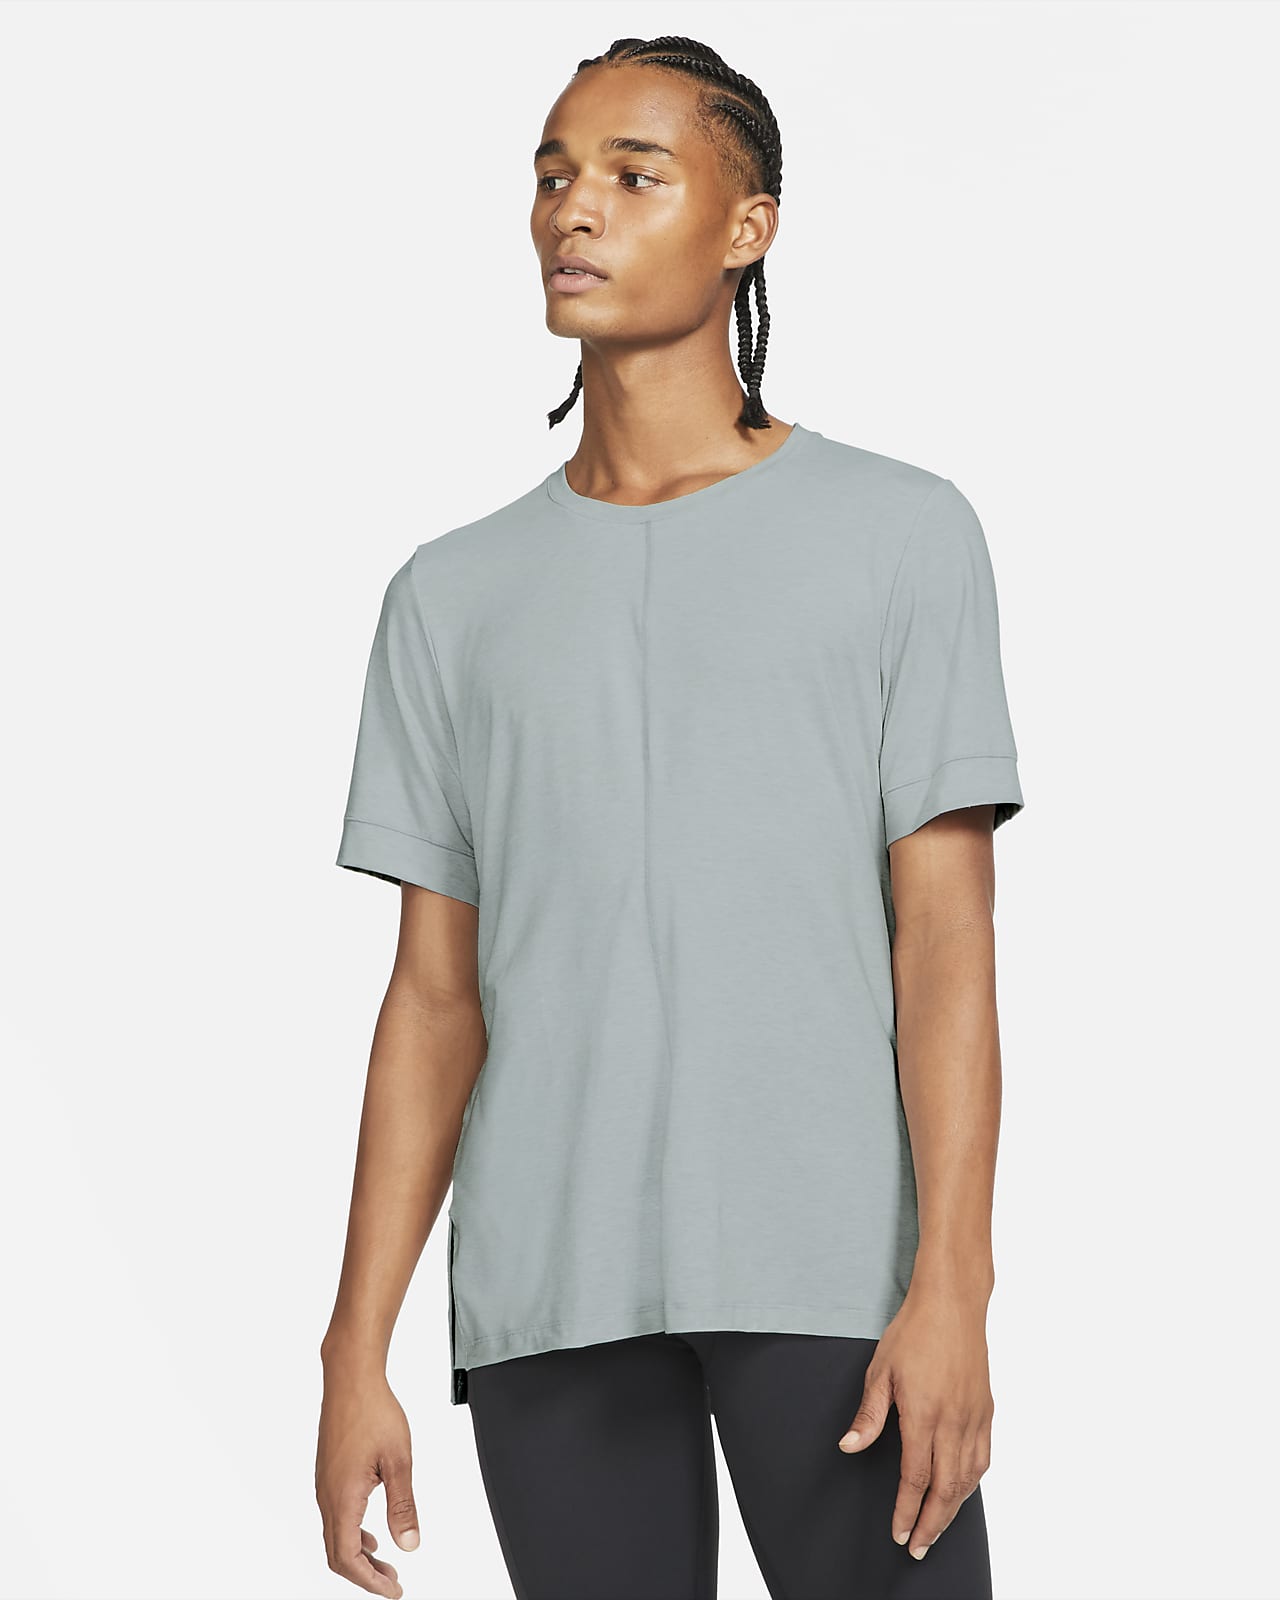 Nike Yoga Dri-FIT Camiseta de manga corta - Hombre